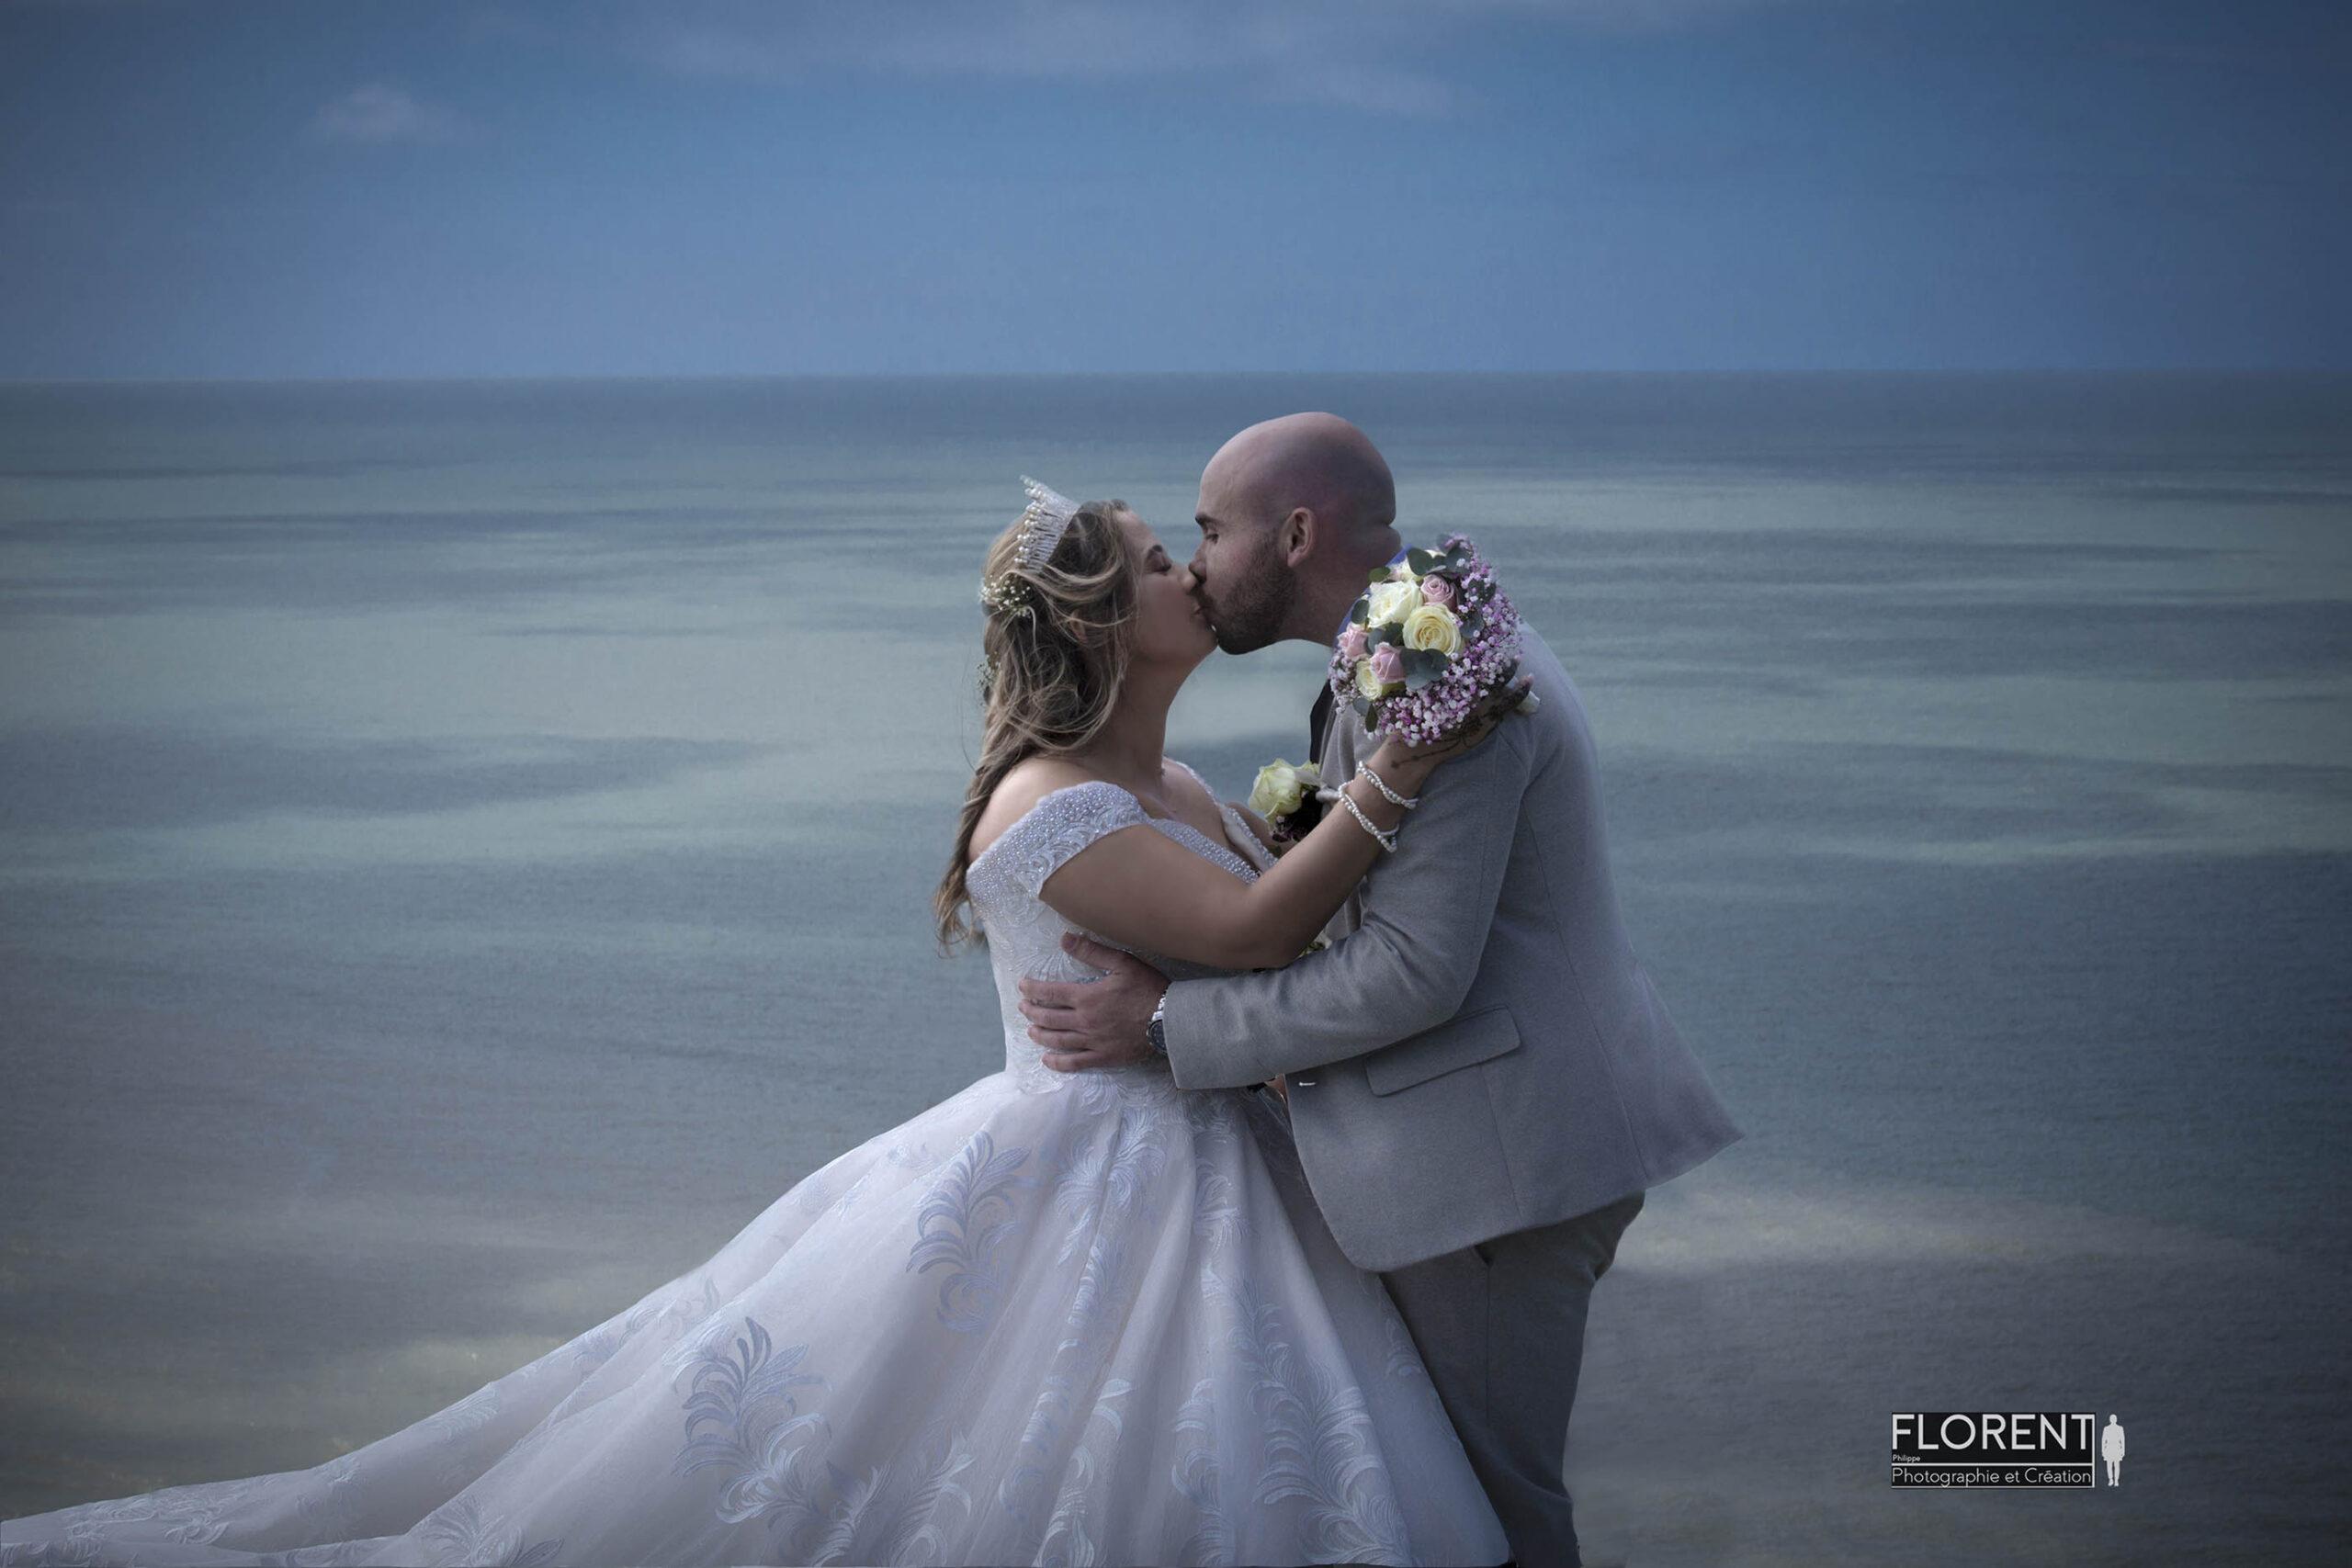 une superbe séance photo mariage romantique du couple avec vue sur la mer florent photographe boulogne sur mer lille paris le touquet hardelot